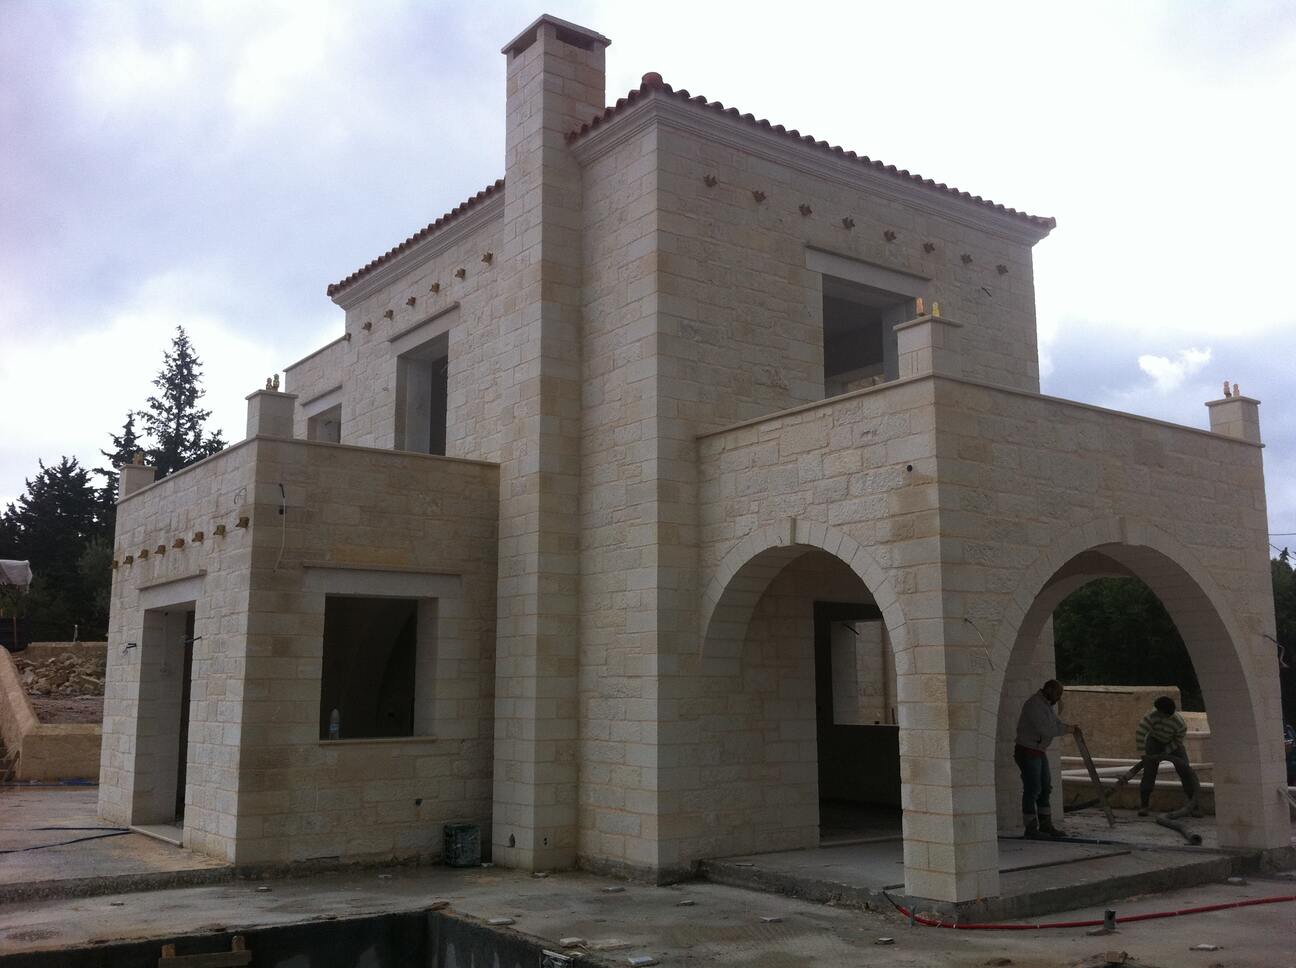 πέτρινο σπίτι στην Κρήτη - Κατασκευή βίλας με θέα θάλασσα στα Χανιά